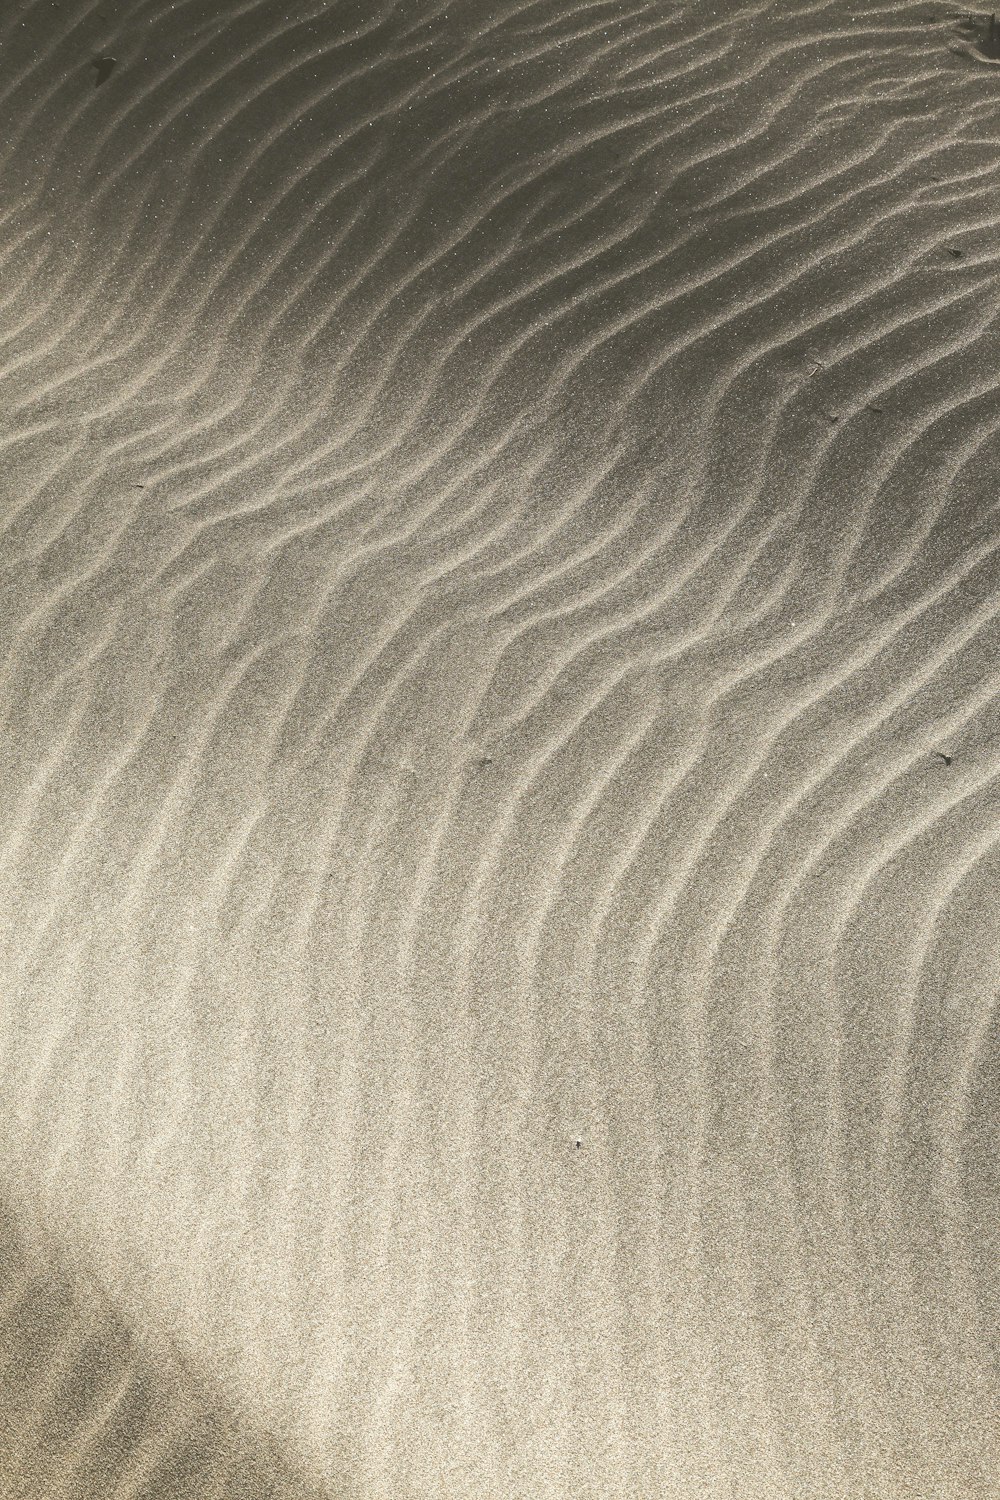 una duna de arena con un pequeño pájaro parado encima de ella